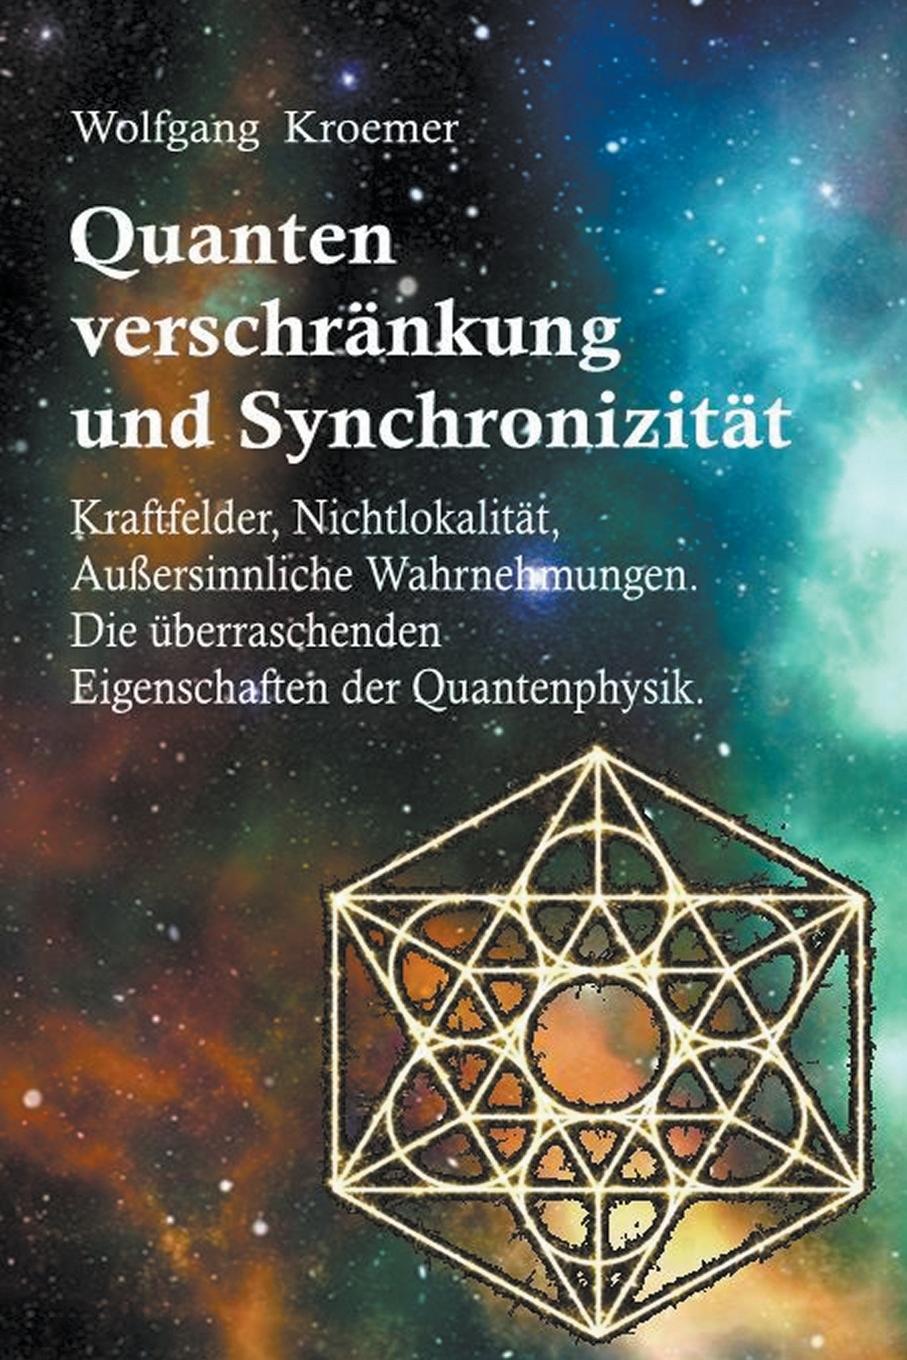 Book Quantenverschrankung und Synchronizitat. Kraftfelder, Nichtlokalitat, Aussersinnliche Wahrnehmungen. Die uberraschenden Eigenschaften der Quantenphysi 